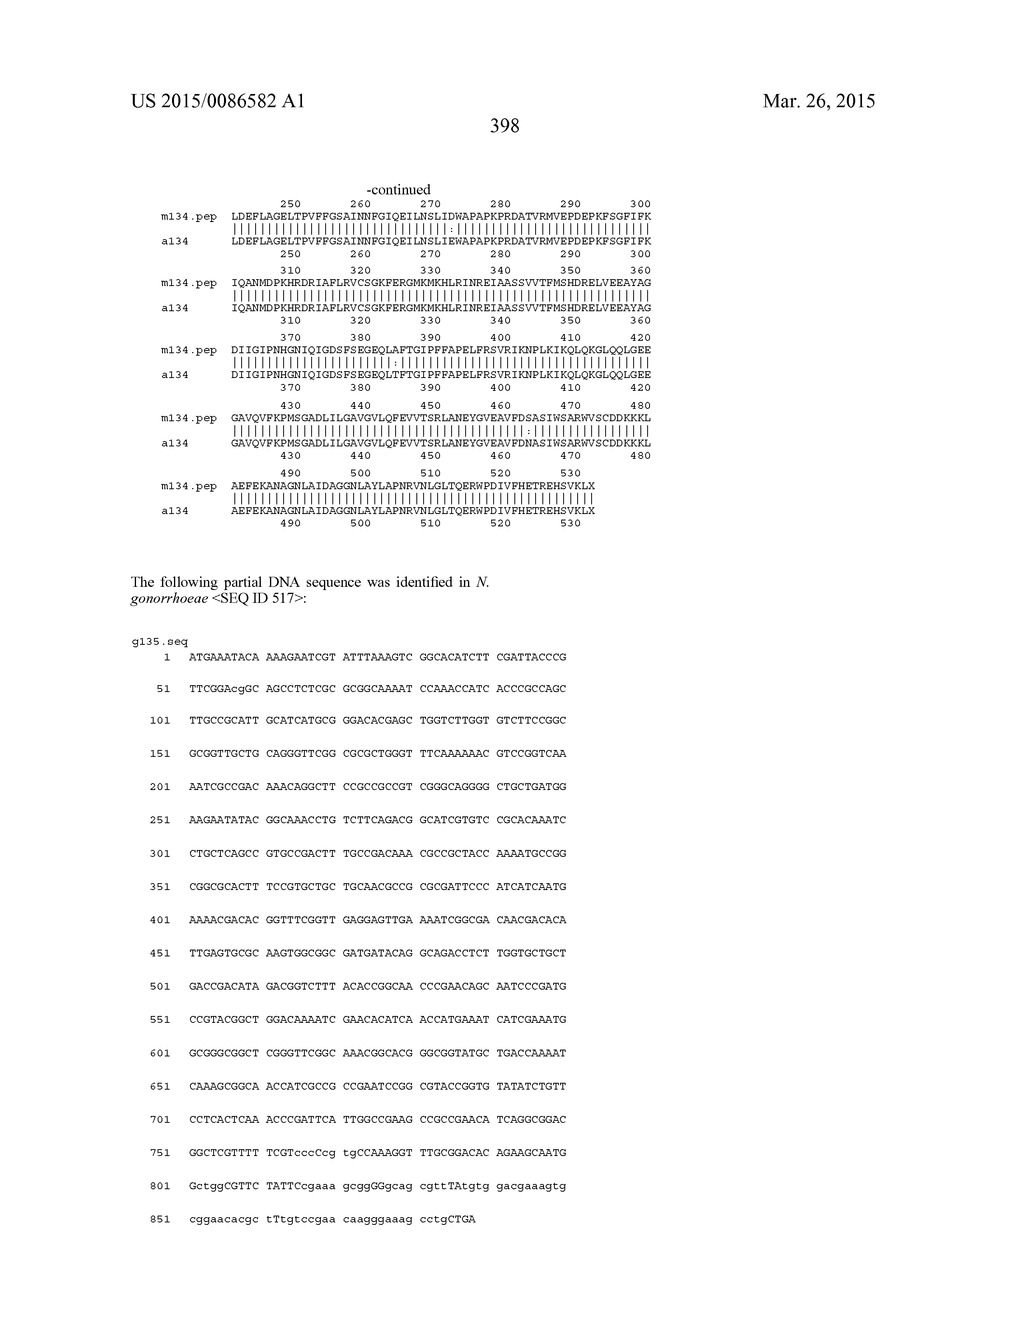 NEISSERIA MENINGITIDIS ANTIGENS AND COMPOSITIONS - diagram, schematic, and image 430